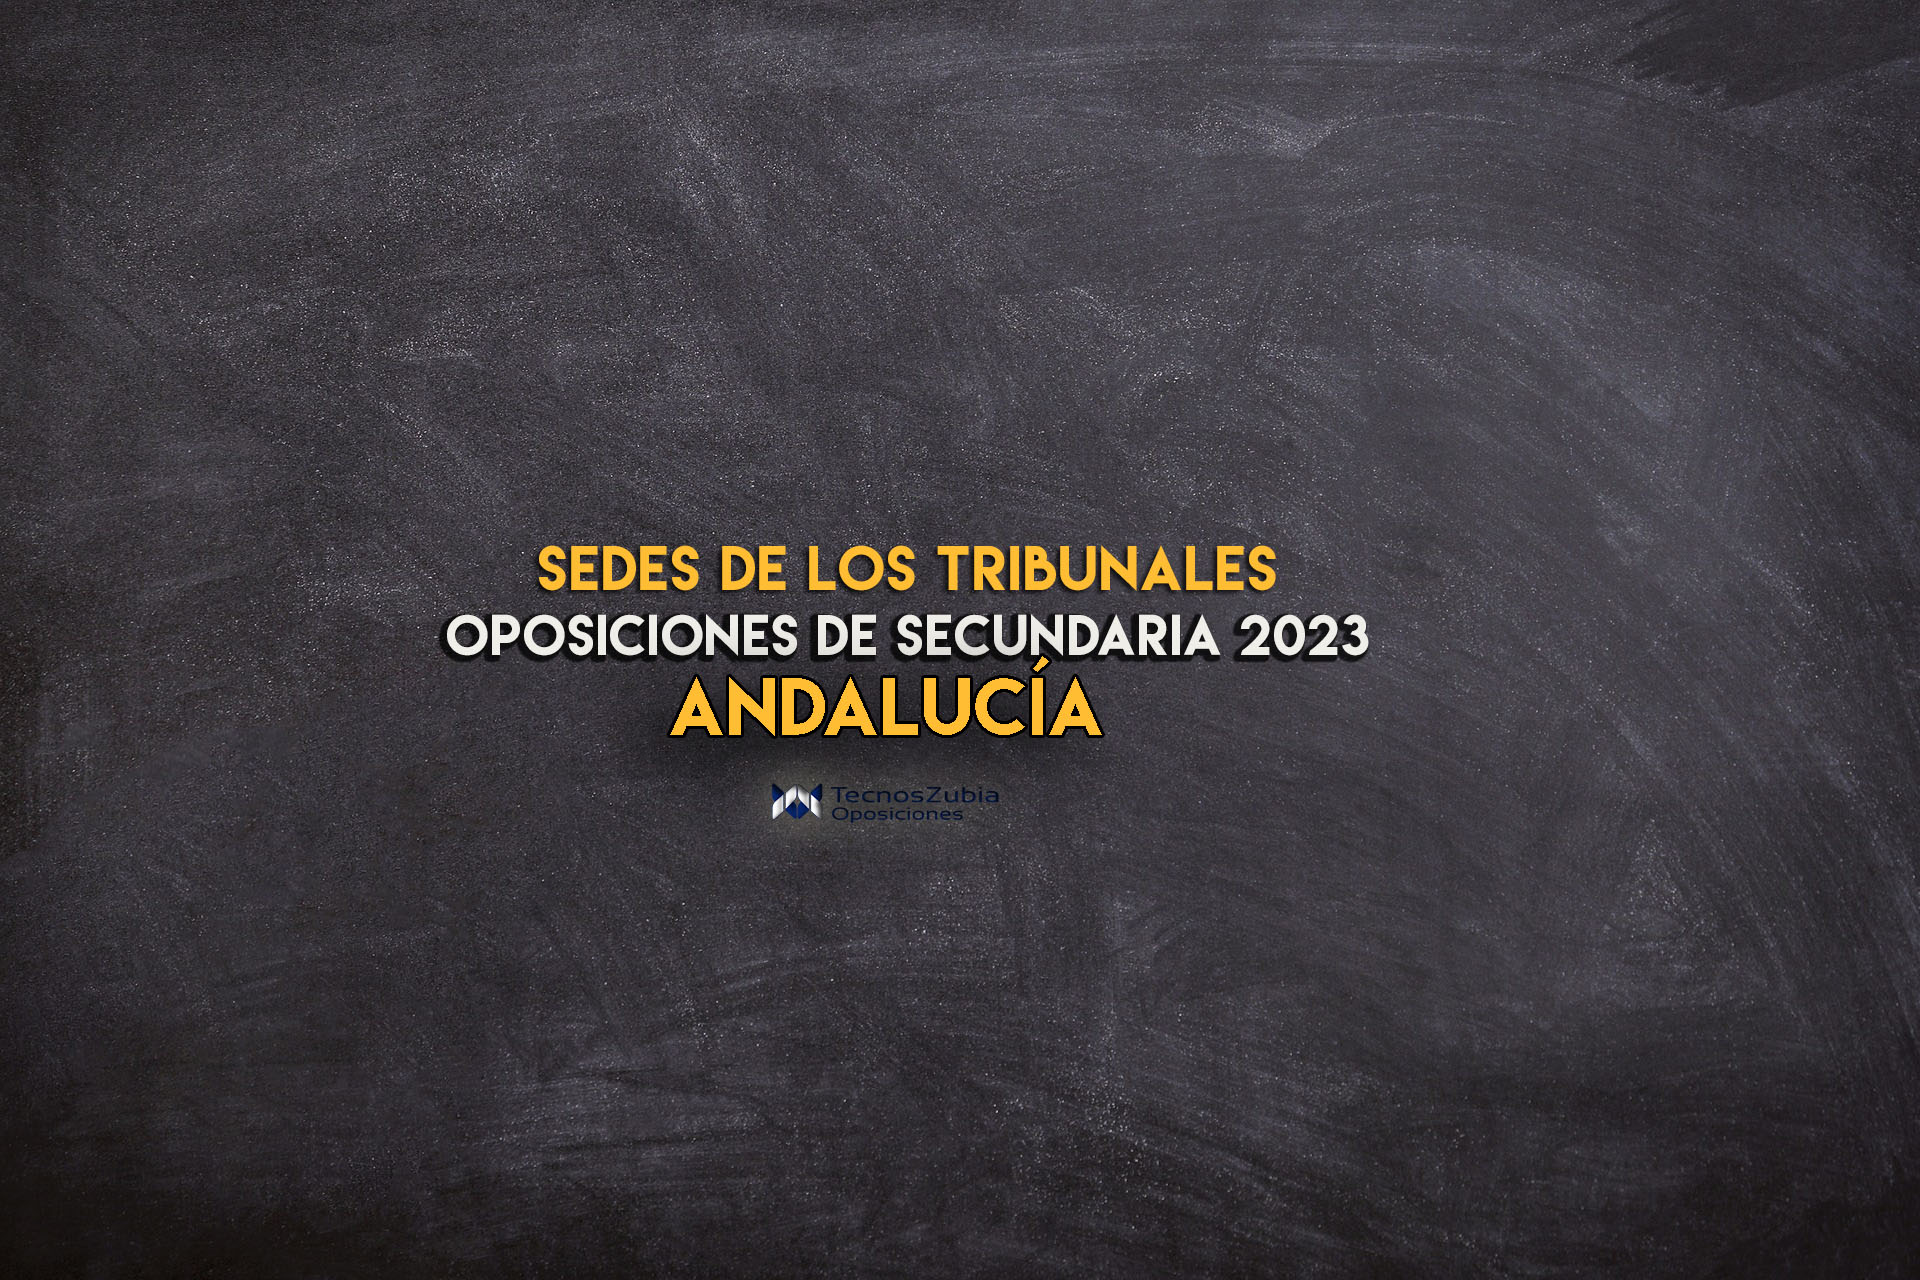 sede andalucia de los tribunales 2023 oposiciones de secundaria